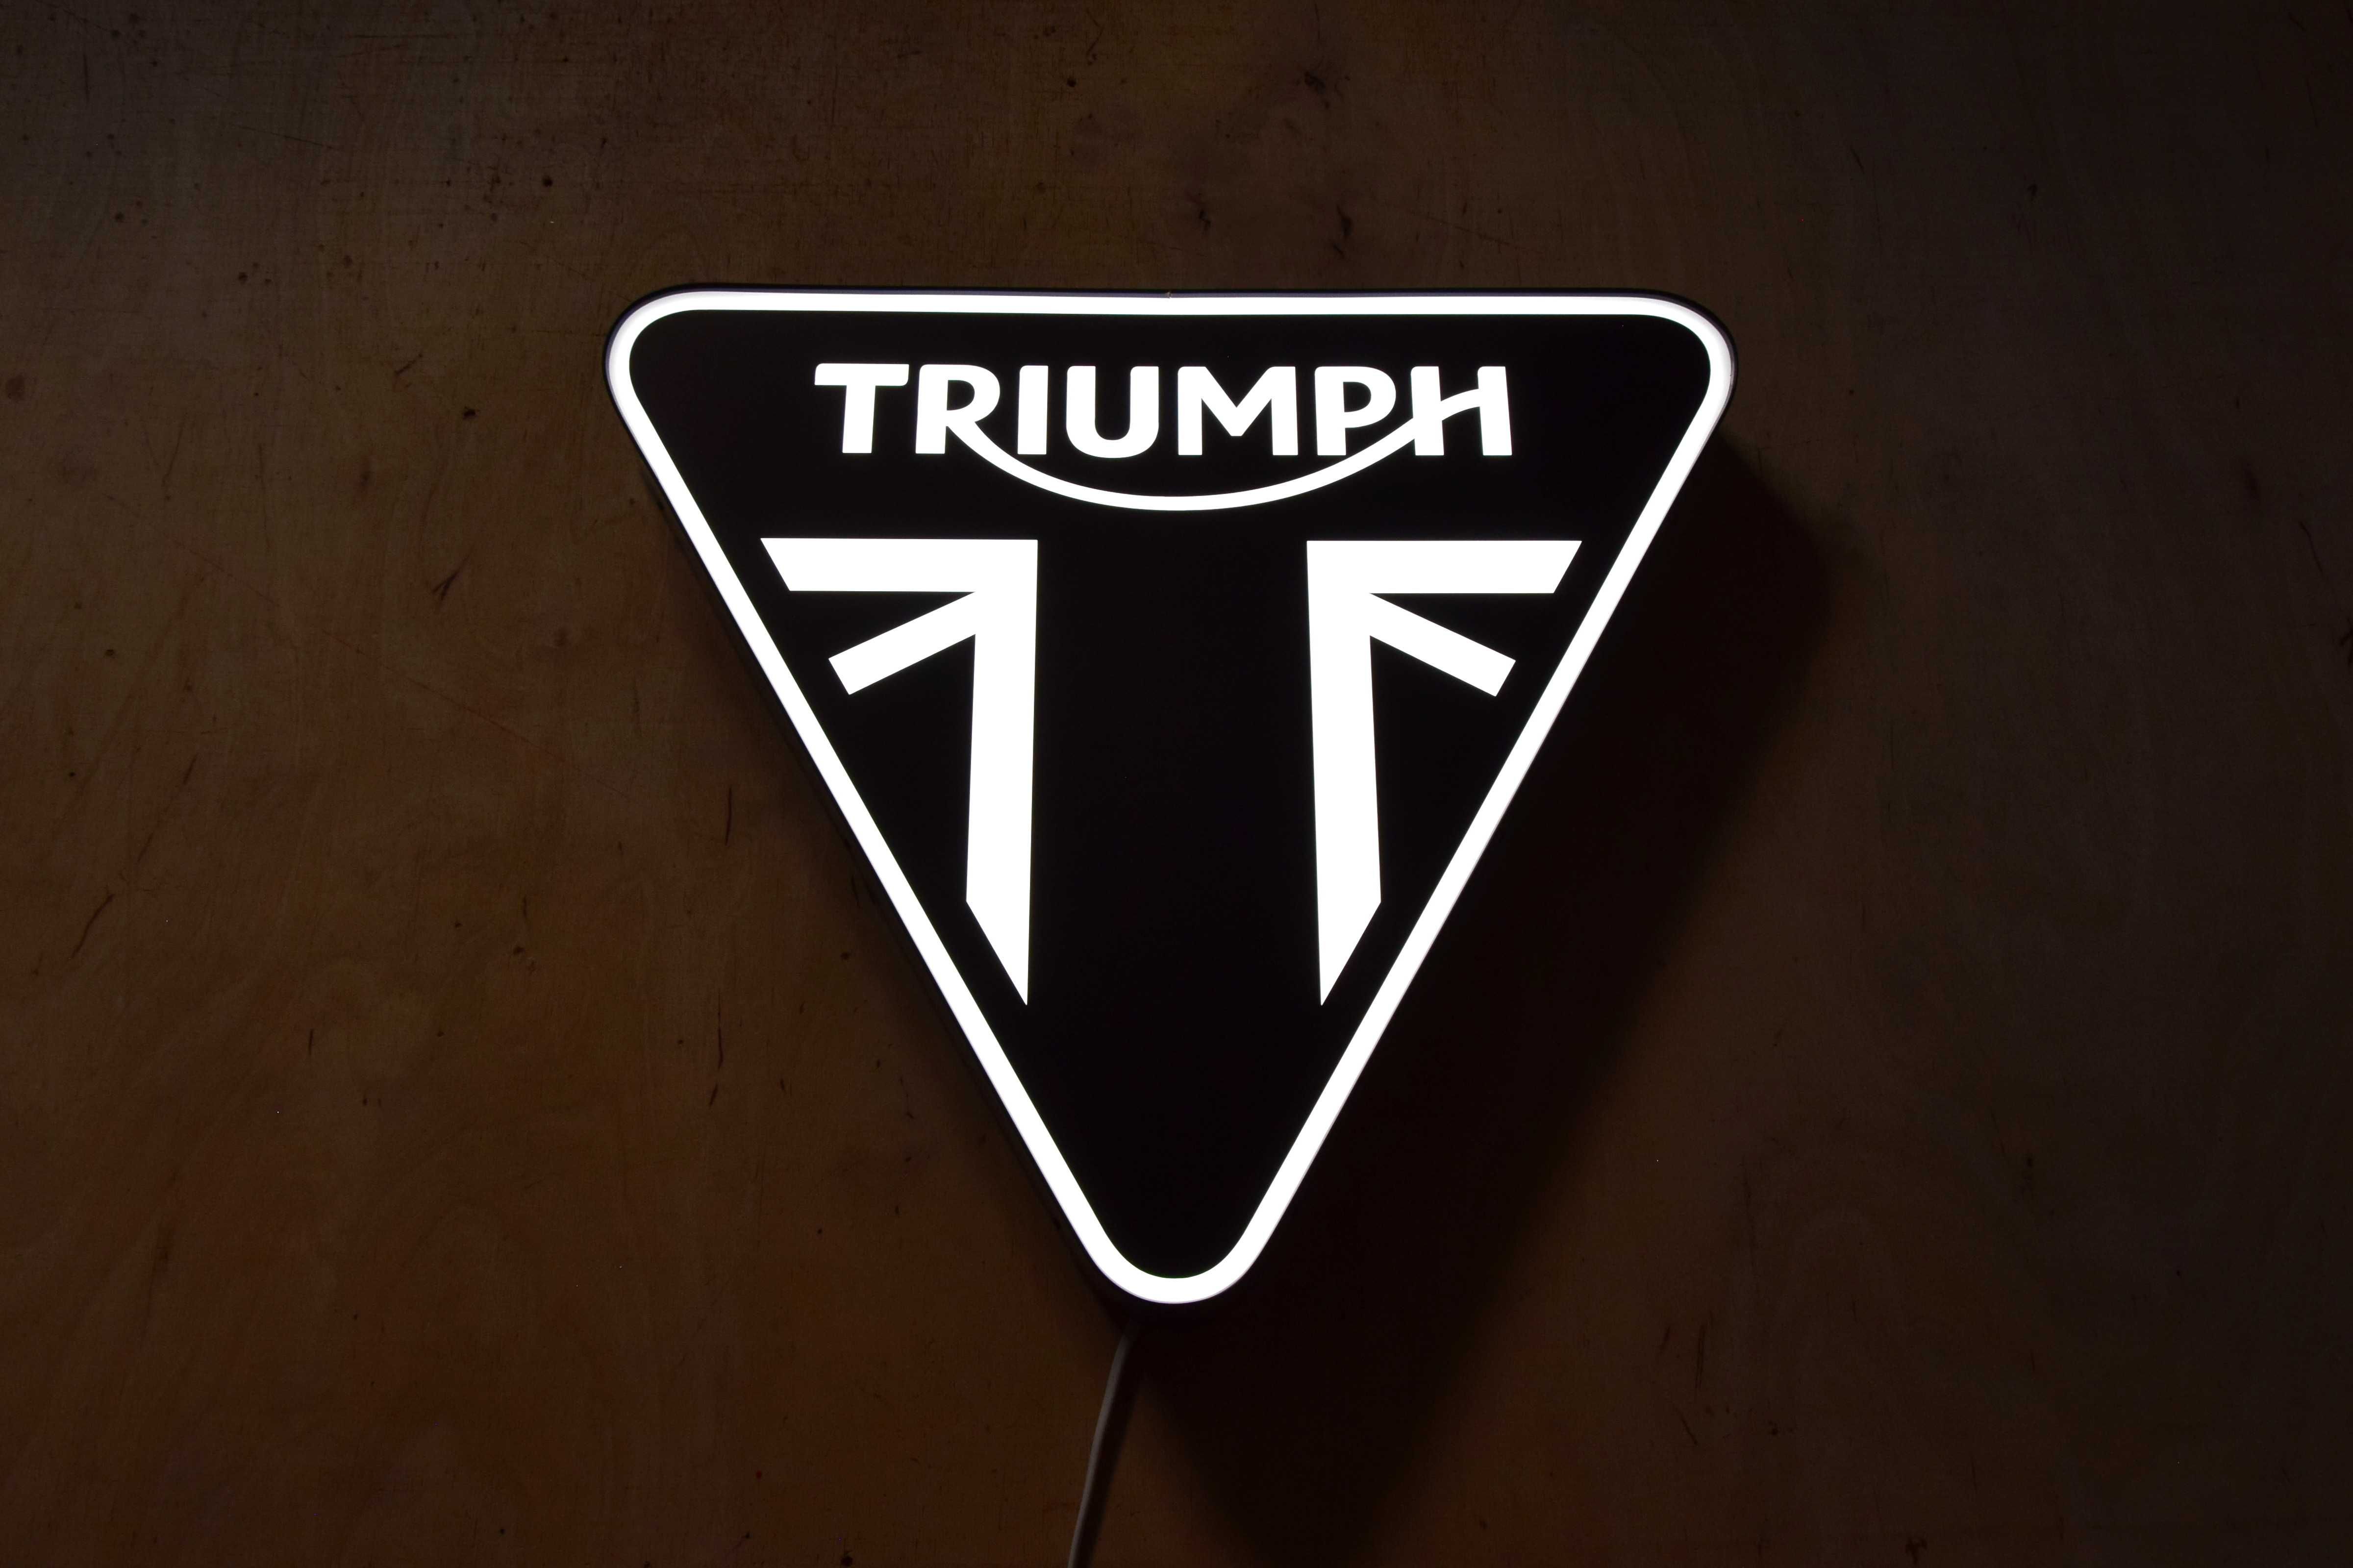 Podświetlane logo TRIUMPH, Neon LED, Reklama 3D, Kaseton, Prezent